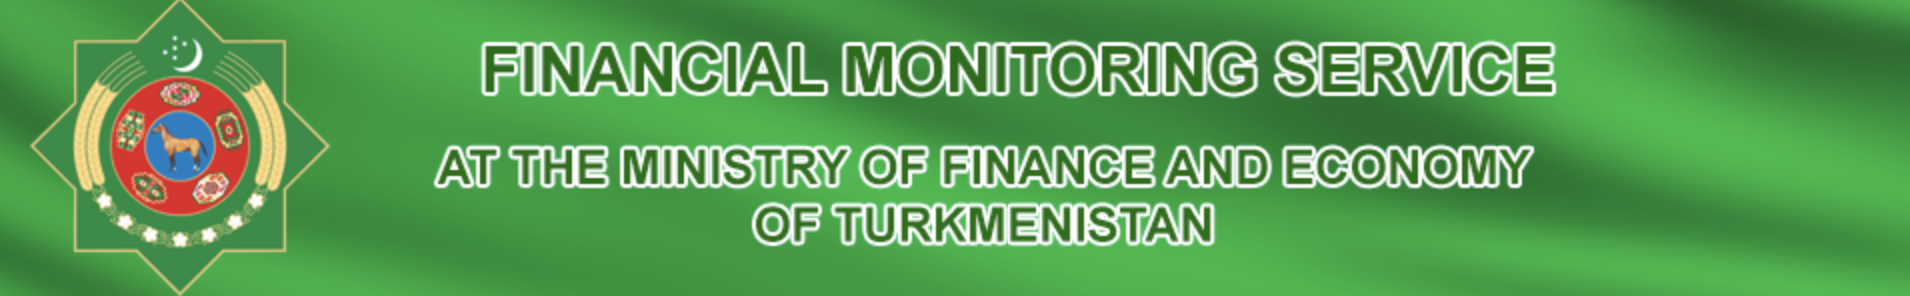 Türkmenisztán Pénzügyminisztérium logója